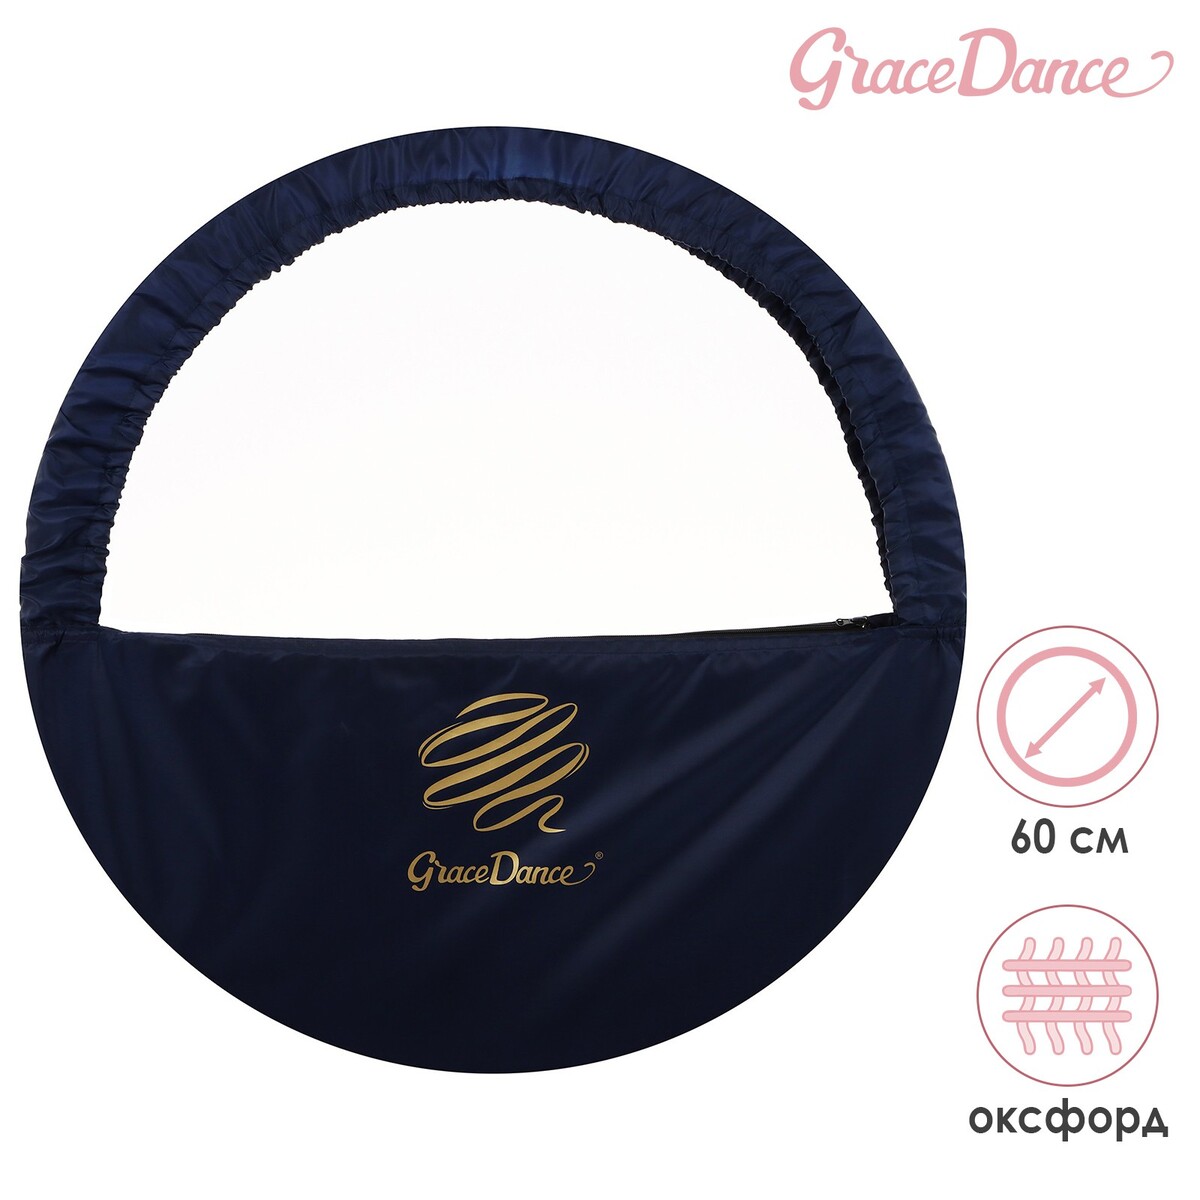 Чехол для обруча grace dance, d=60 см, цвет темно-синий чехол для обруча grace dance